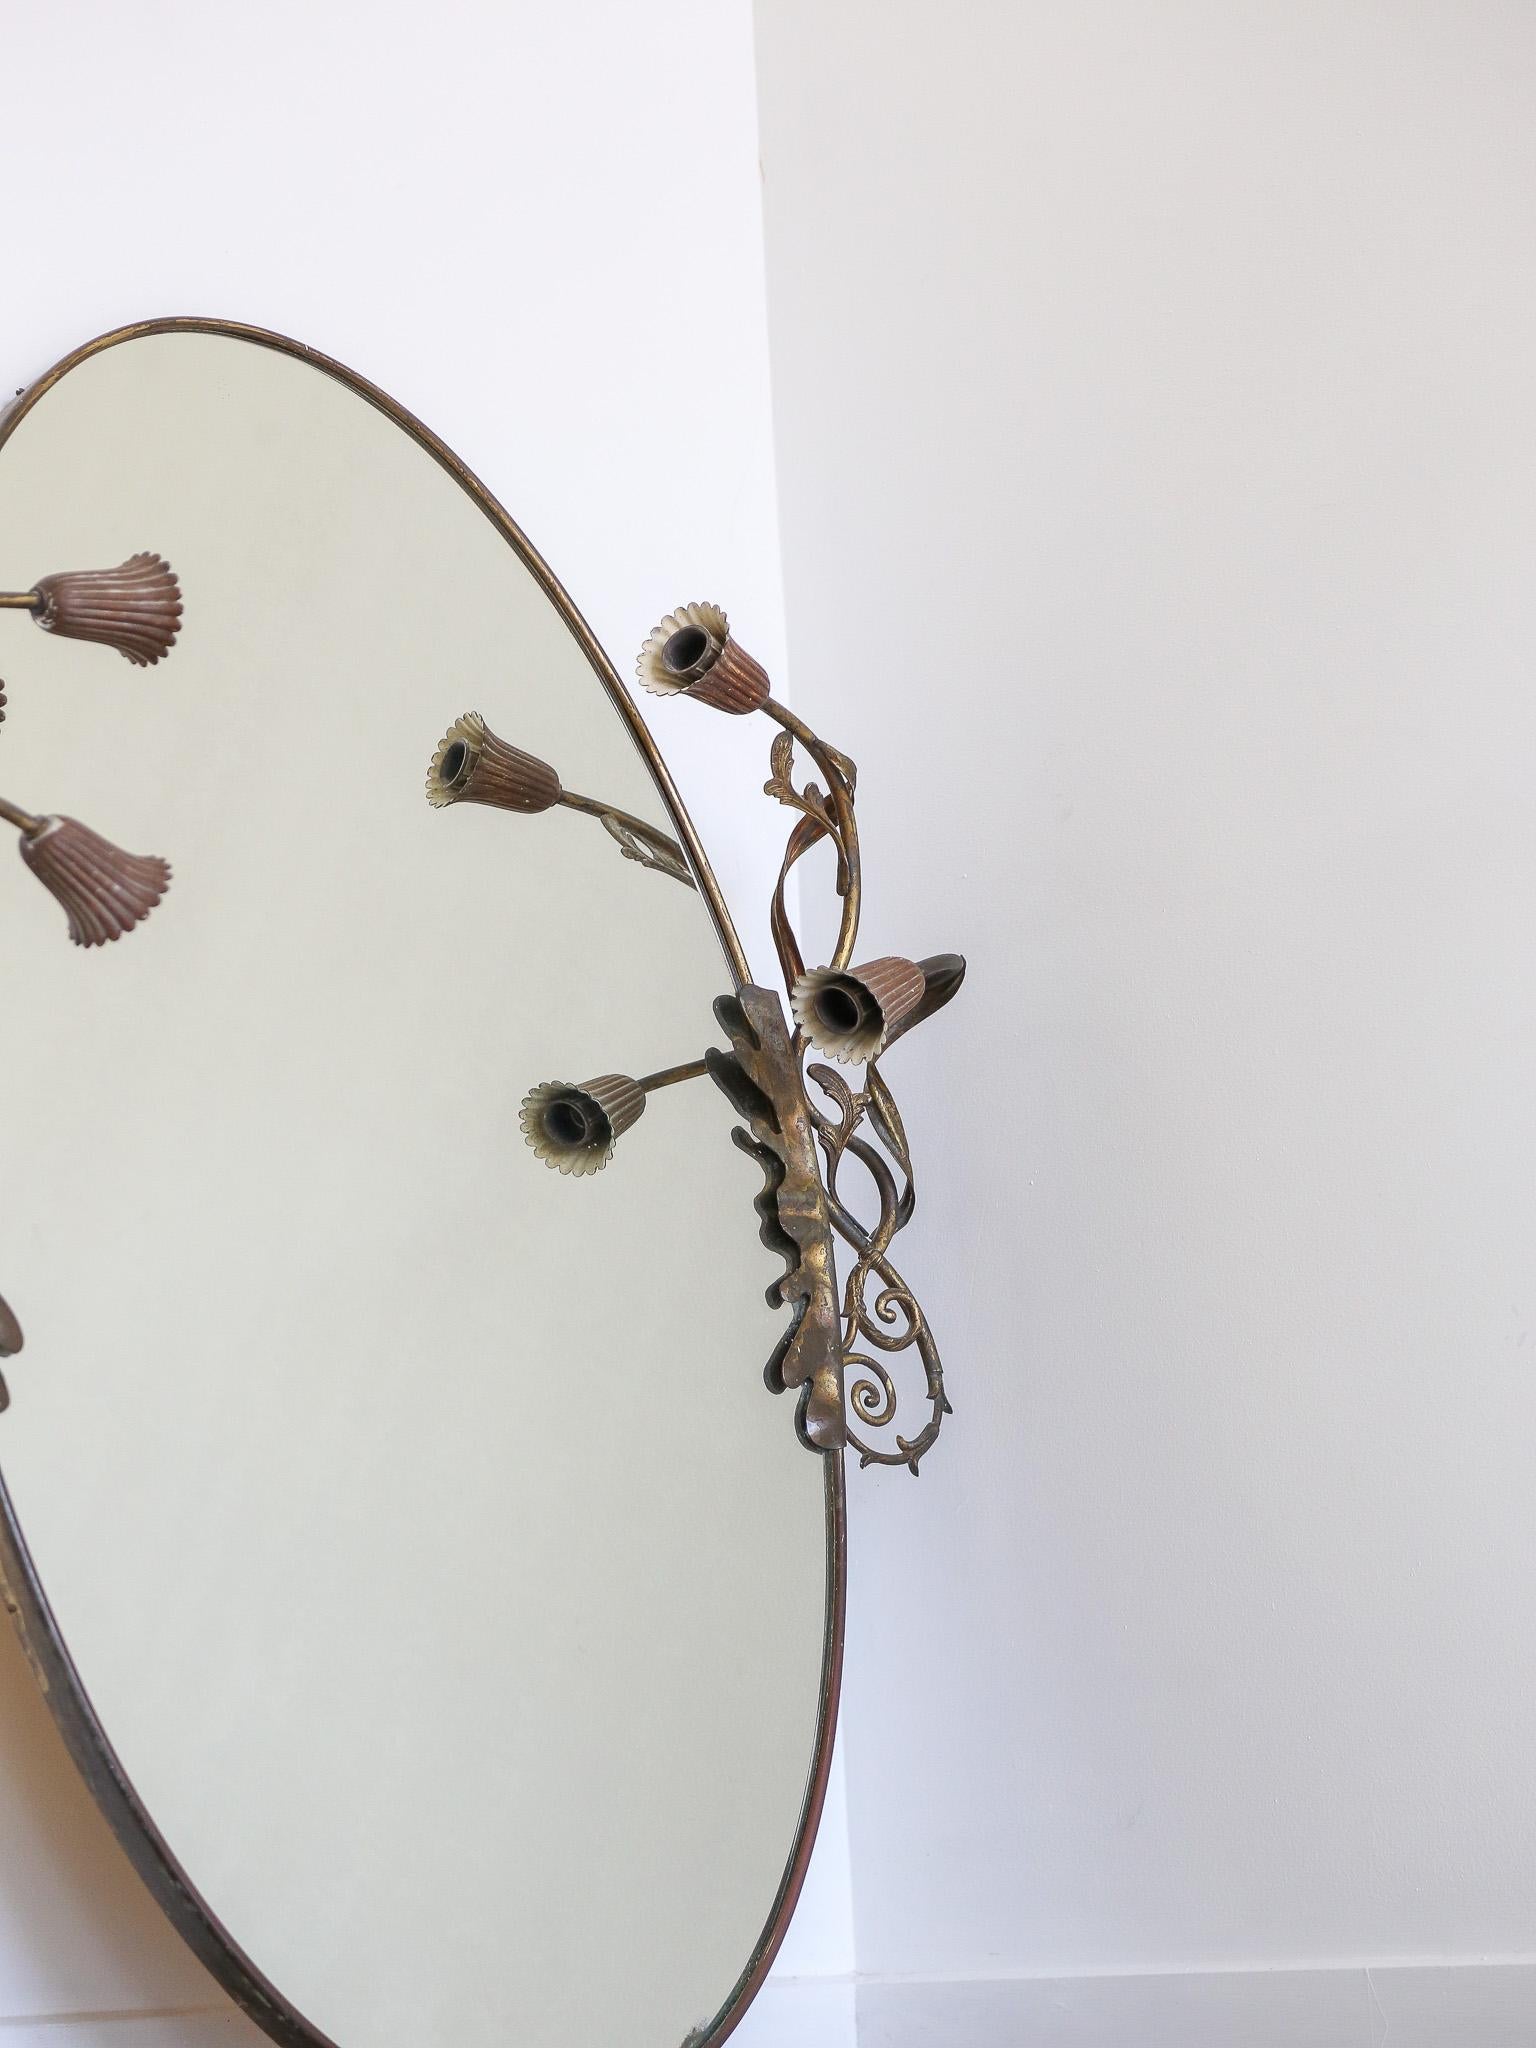  

Miroir mural ovale en laiton Art Deco italien 1950

Ces miroirs se caractérisaient par leurs cadres en laiton, présentant des designs épurés et géométriques aux lignes nettes. Dans les années 1950, le laiton était un matériau populaire pour la